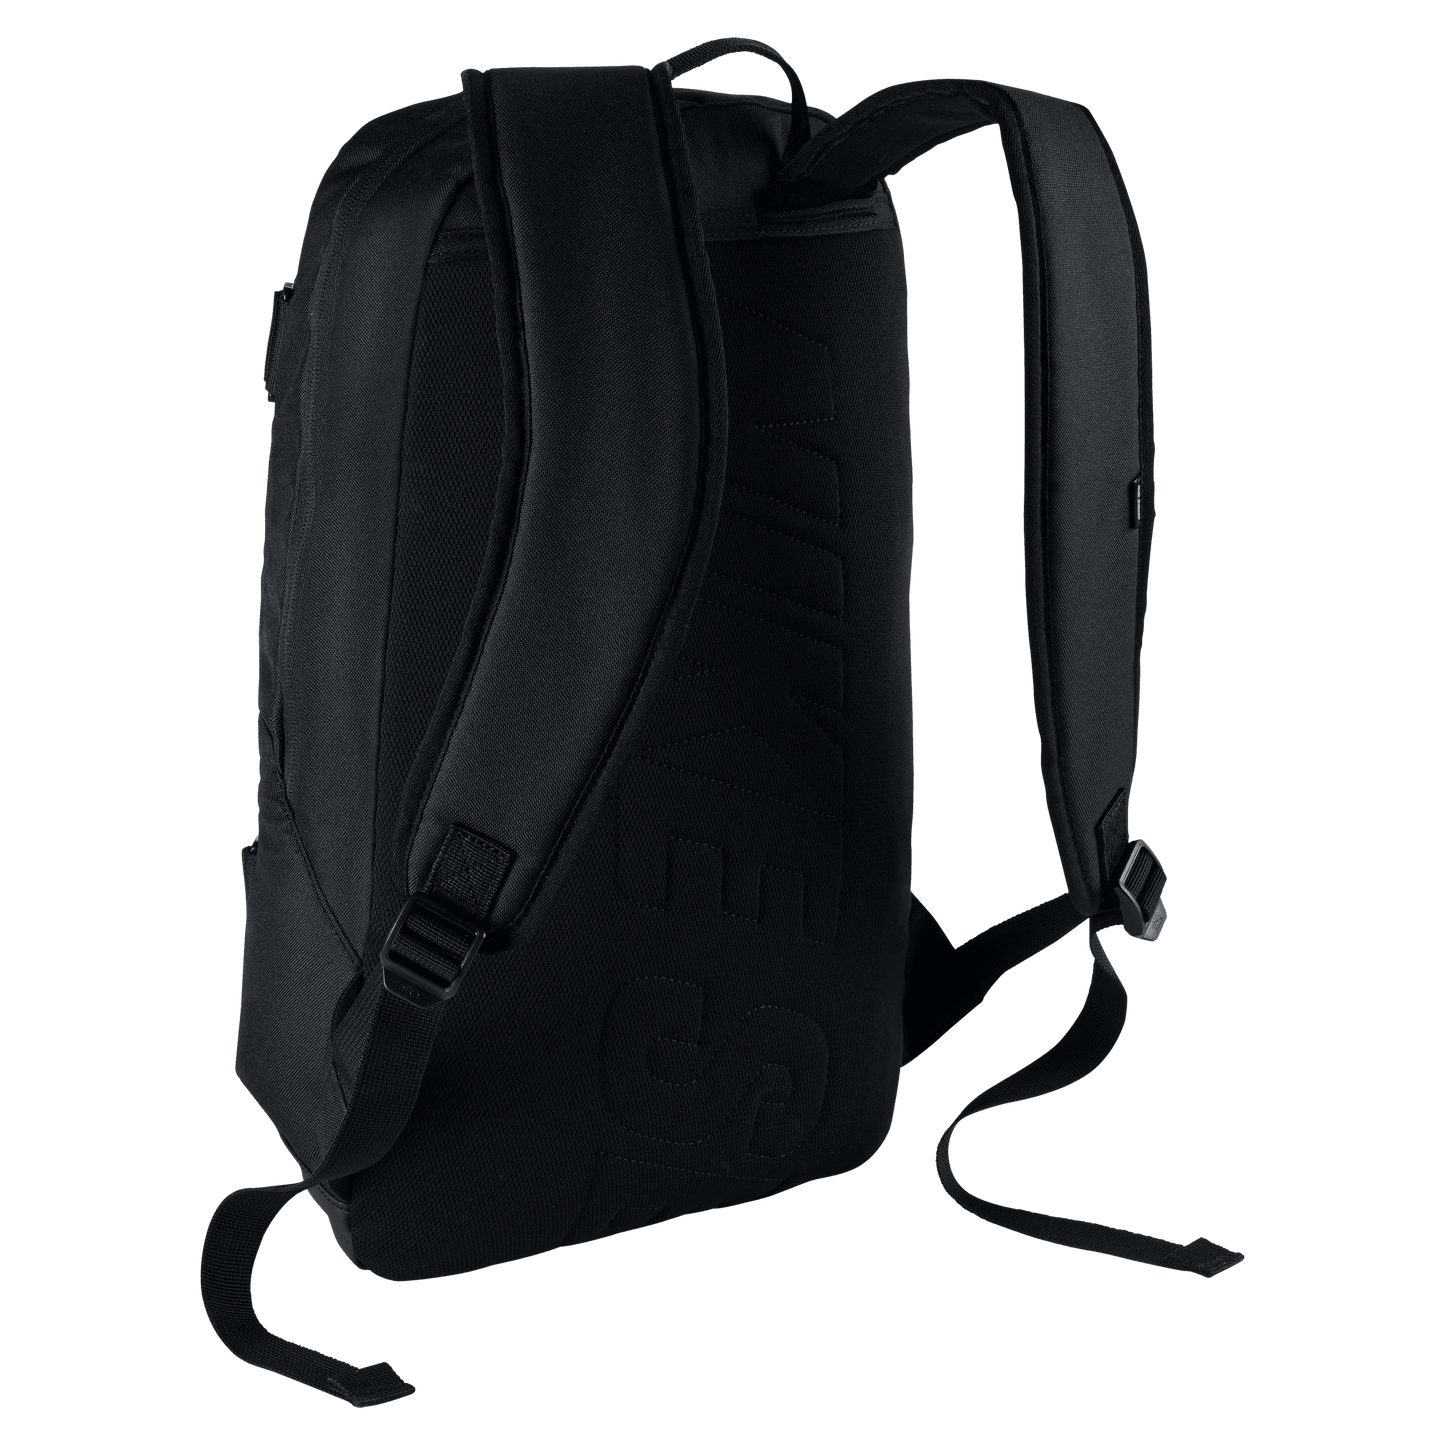 Nike SB Courthouse backpack black white